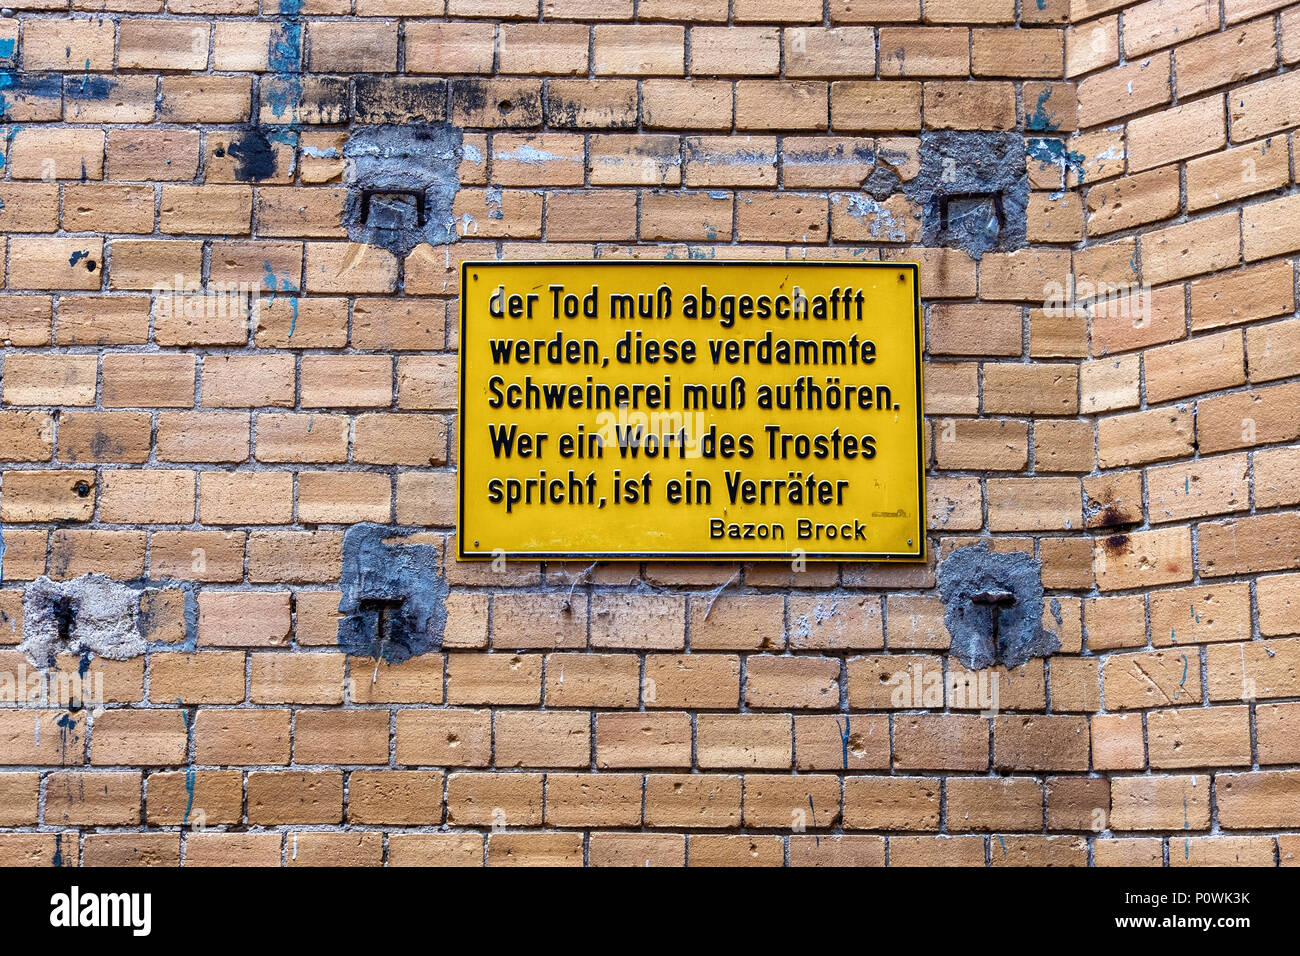 Berlin Mitte, Sophie-Gips-Höfe. Plaque Jaune avec citation par Bazon Brook sur cour mur de l'immeuble du xixe siècle Banque D'Images